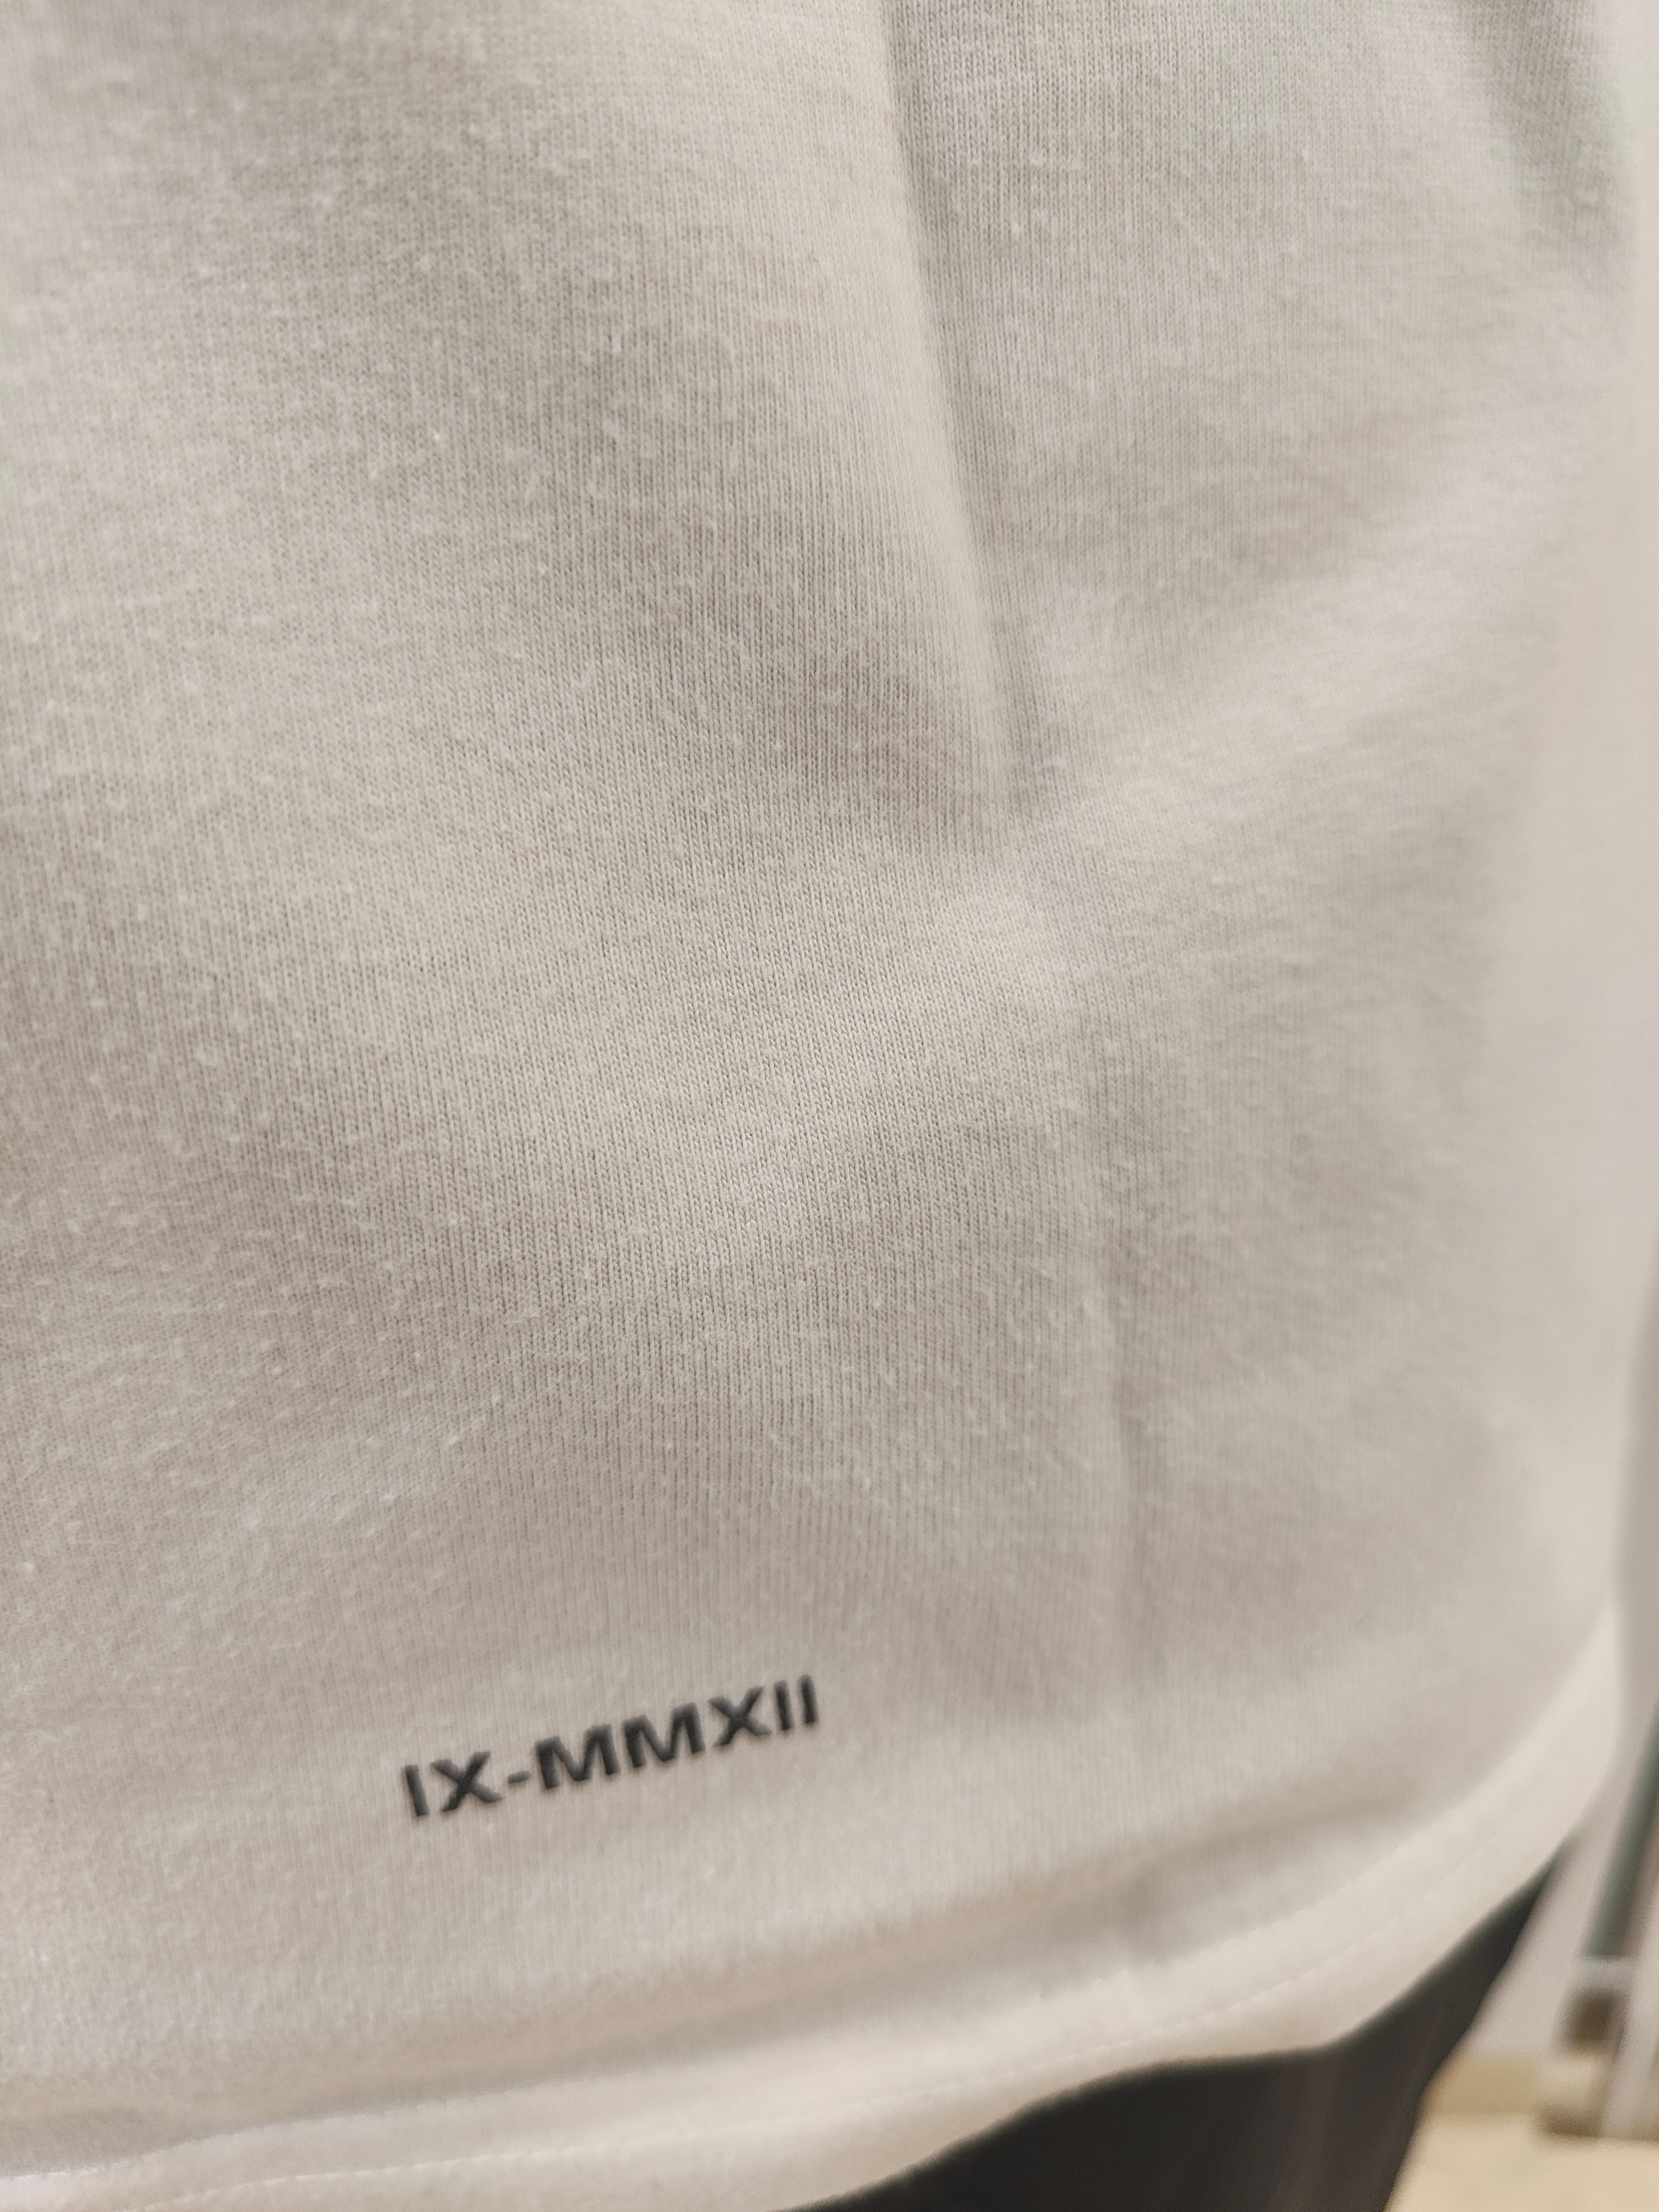 Supreme White limitierte Auflage T-Shirt Größe M 